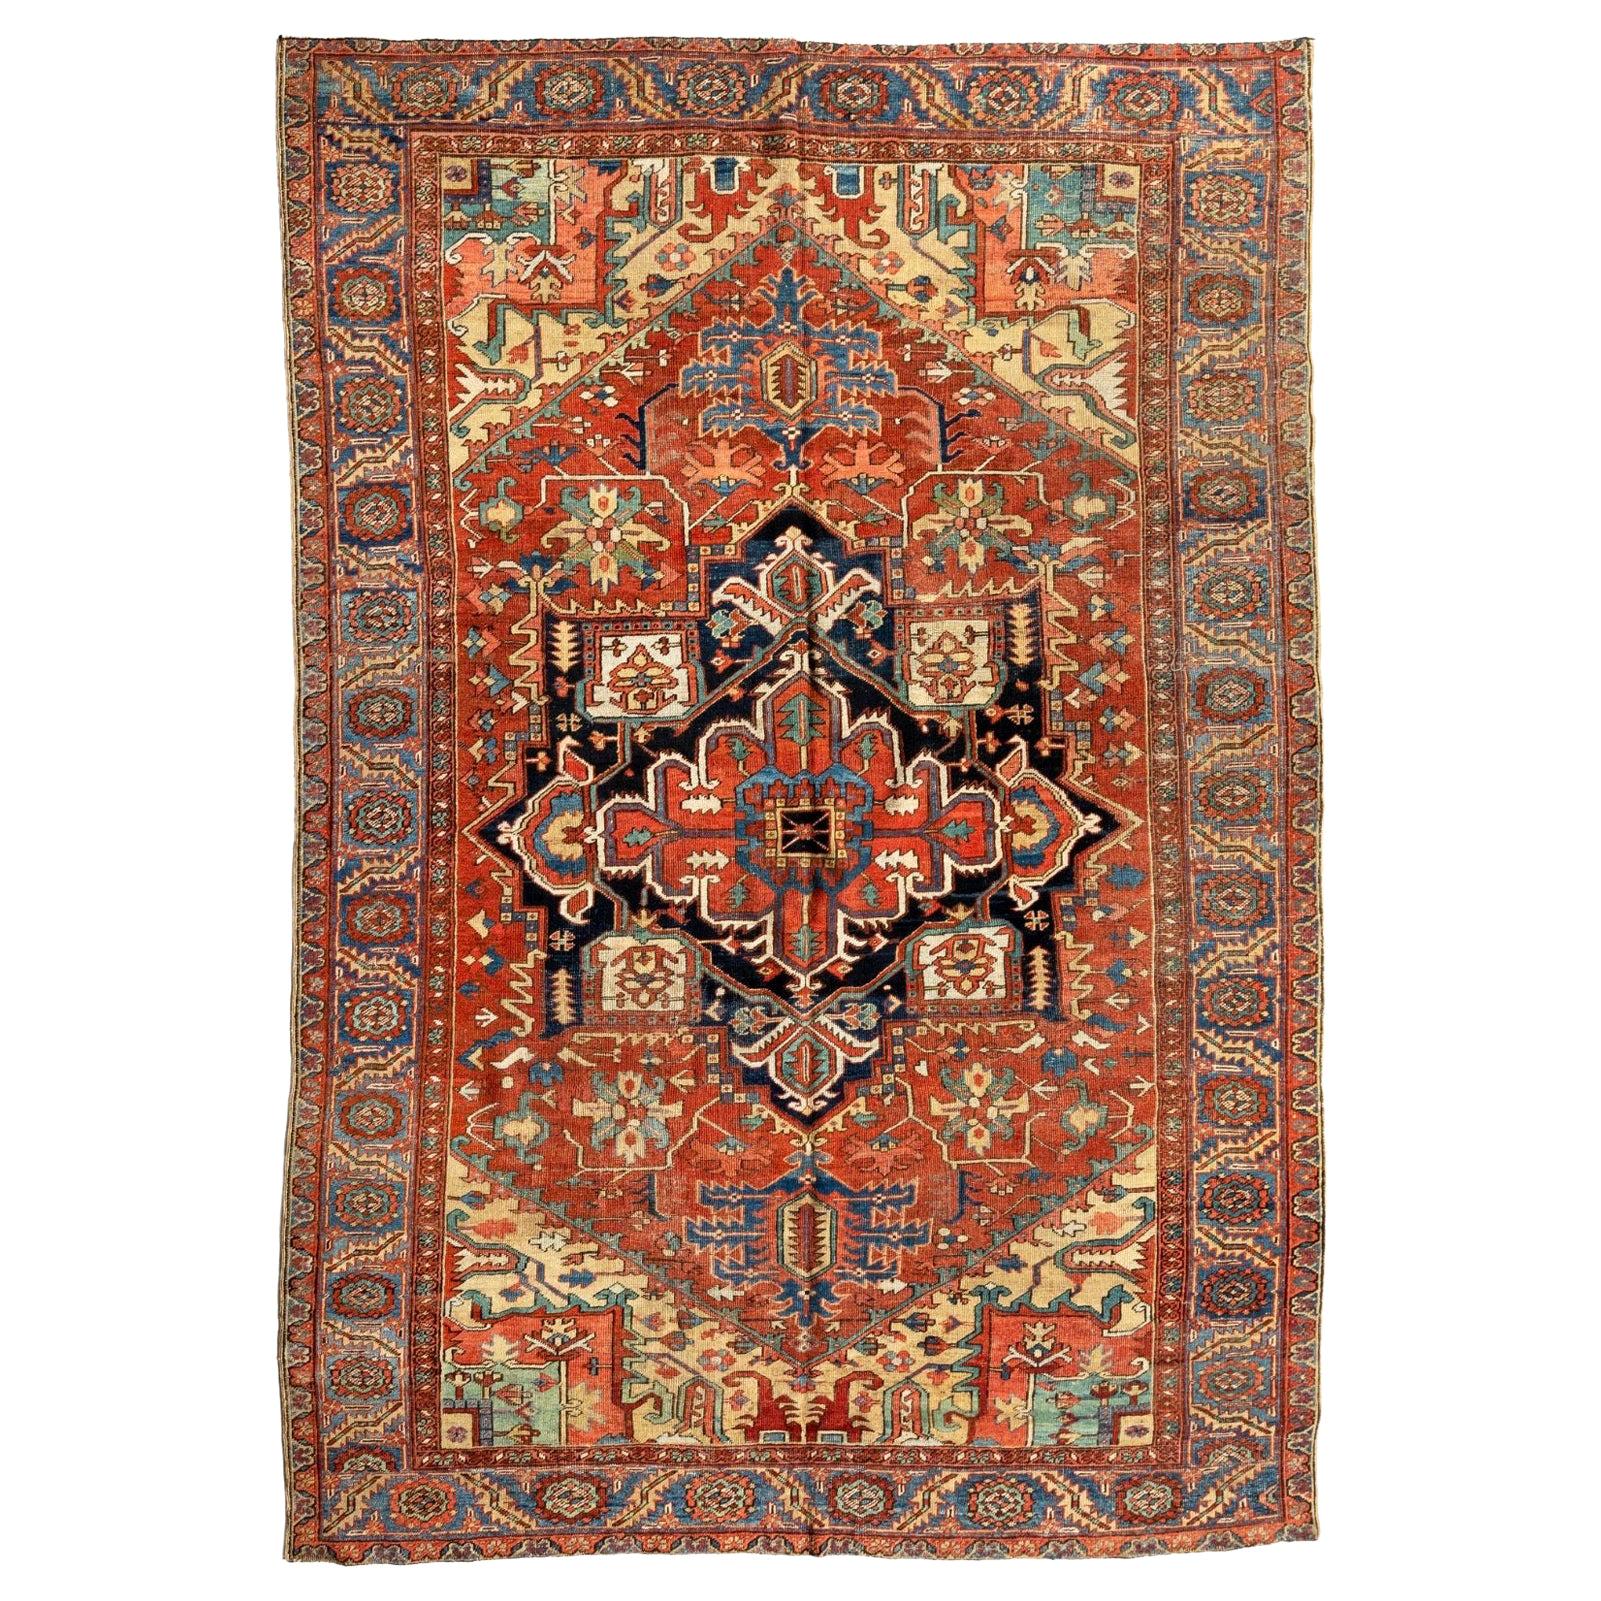 Ancien tapis persan Heriz géométrique bleu marine, bleu marine et or